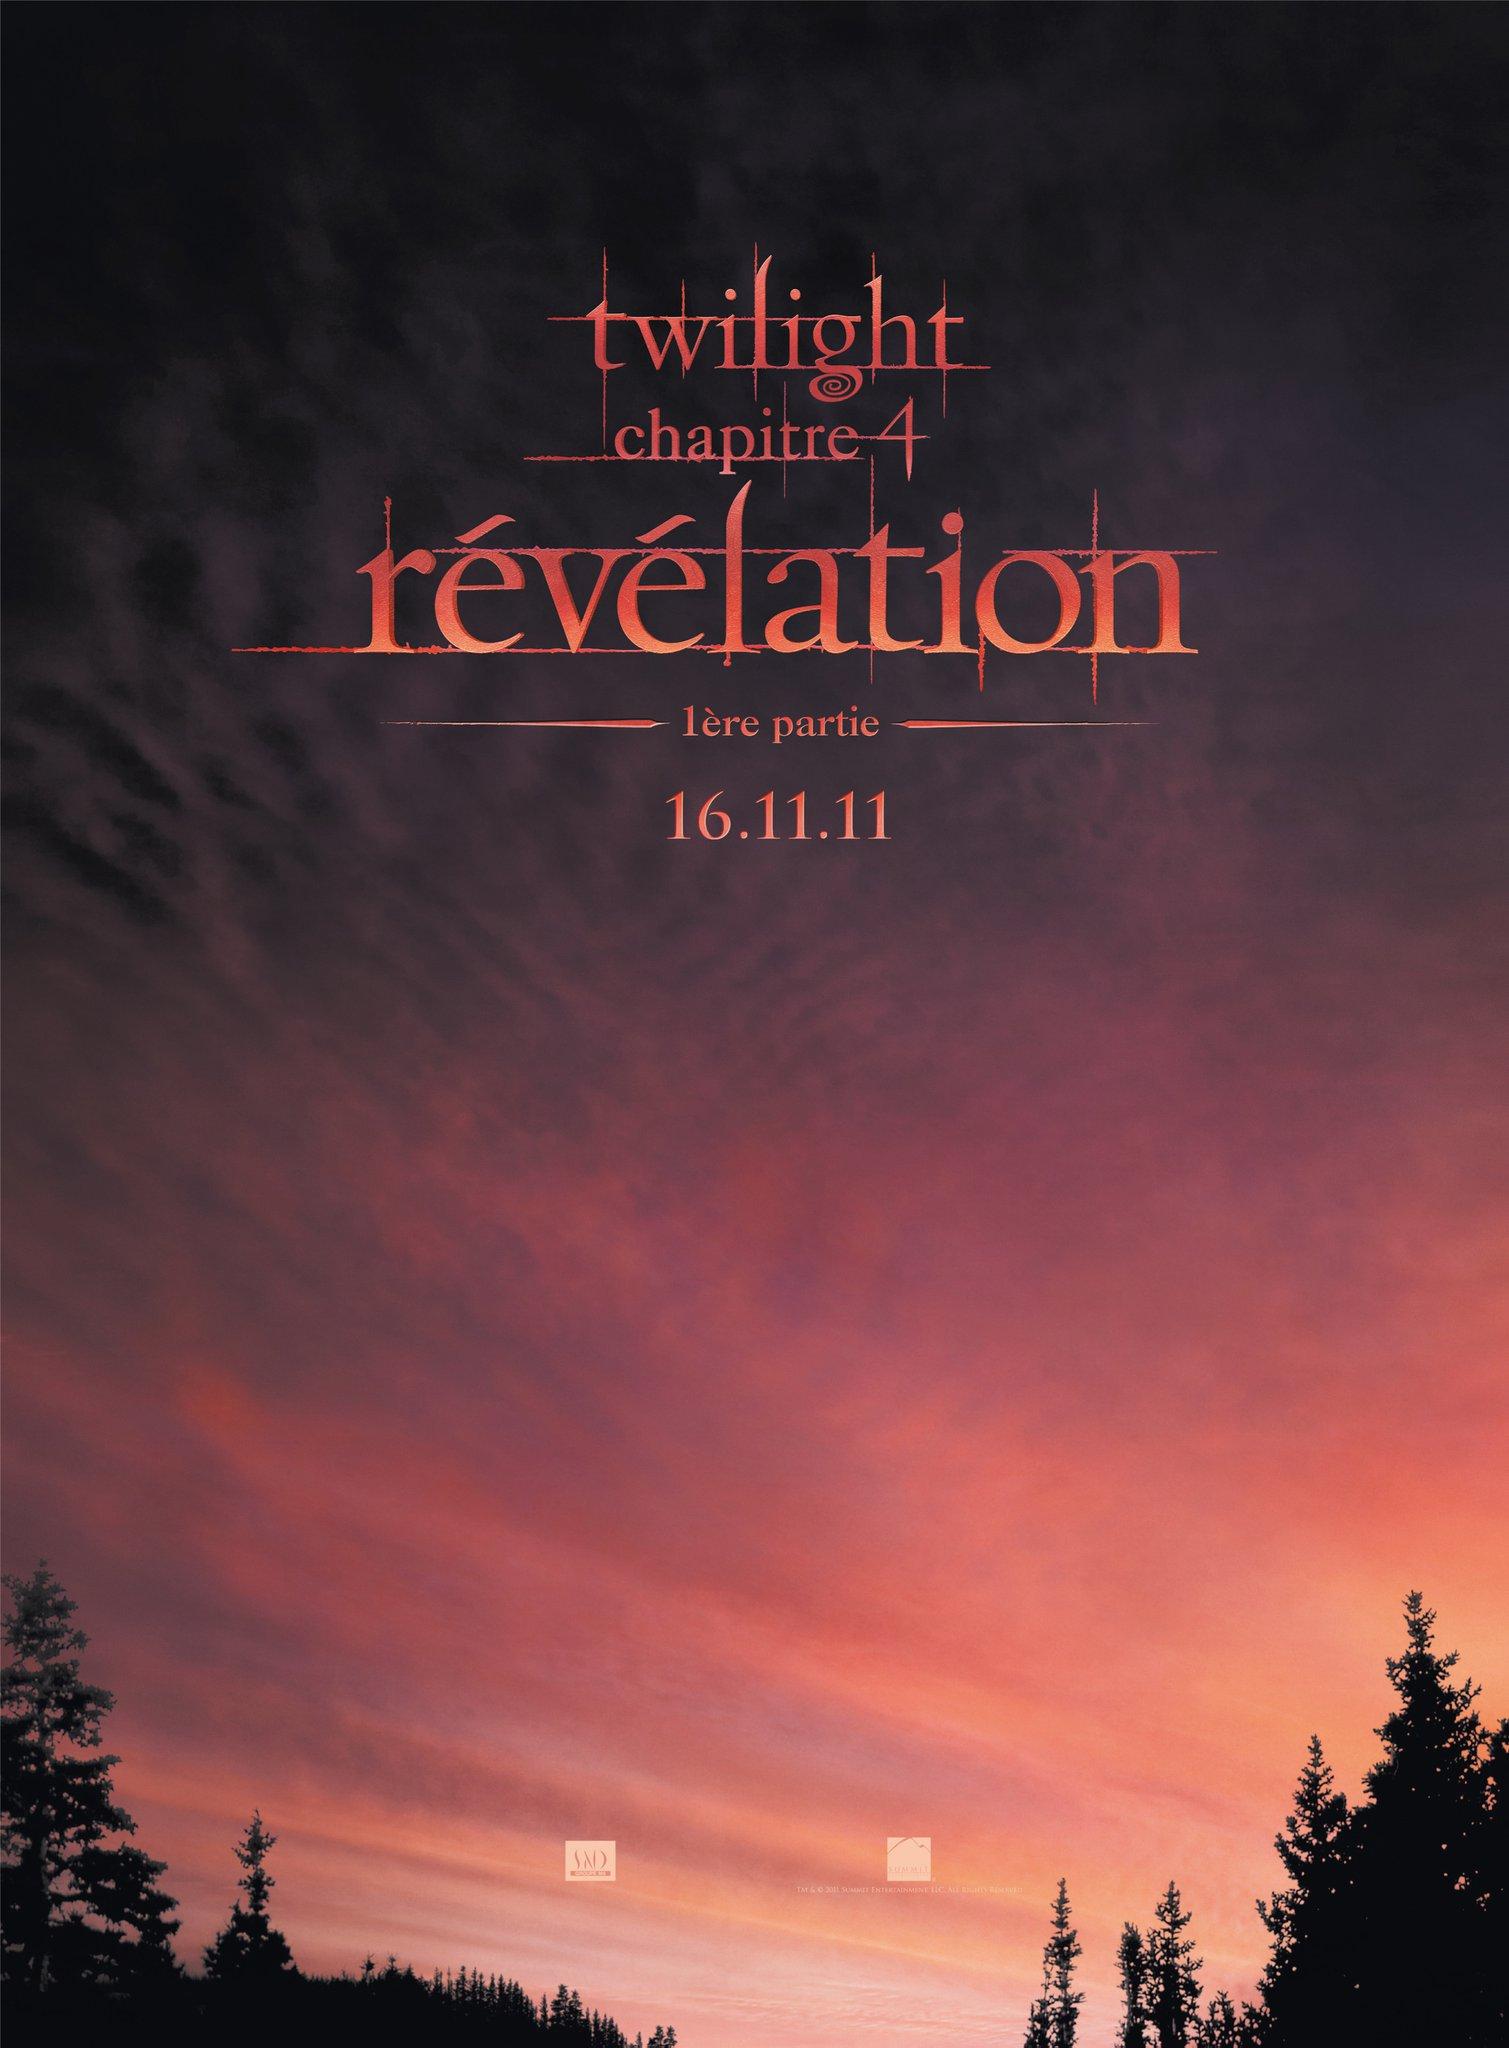 [Breaking Dawn] Le guide officiel du film sera publié le 6 décembre 2011